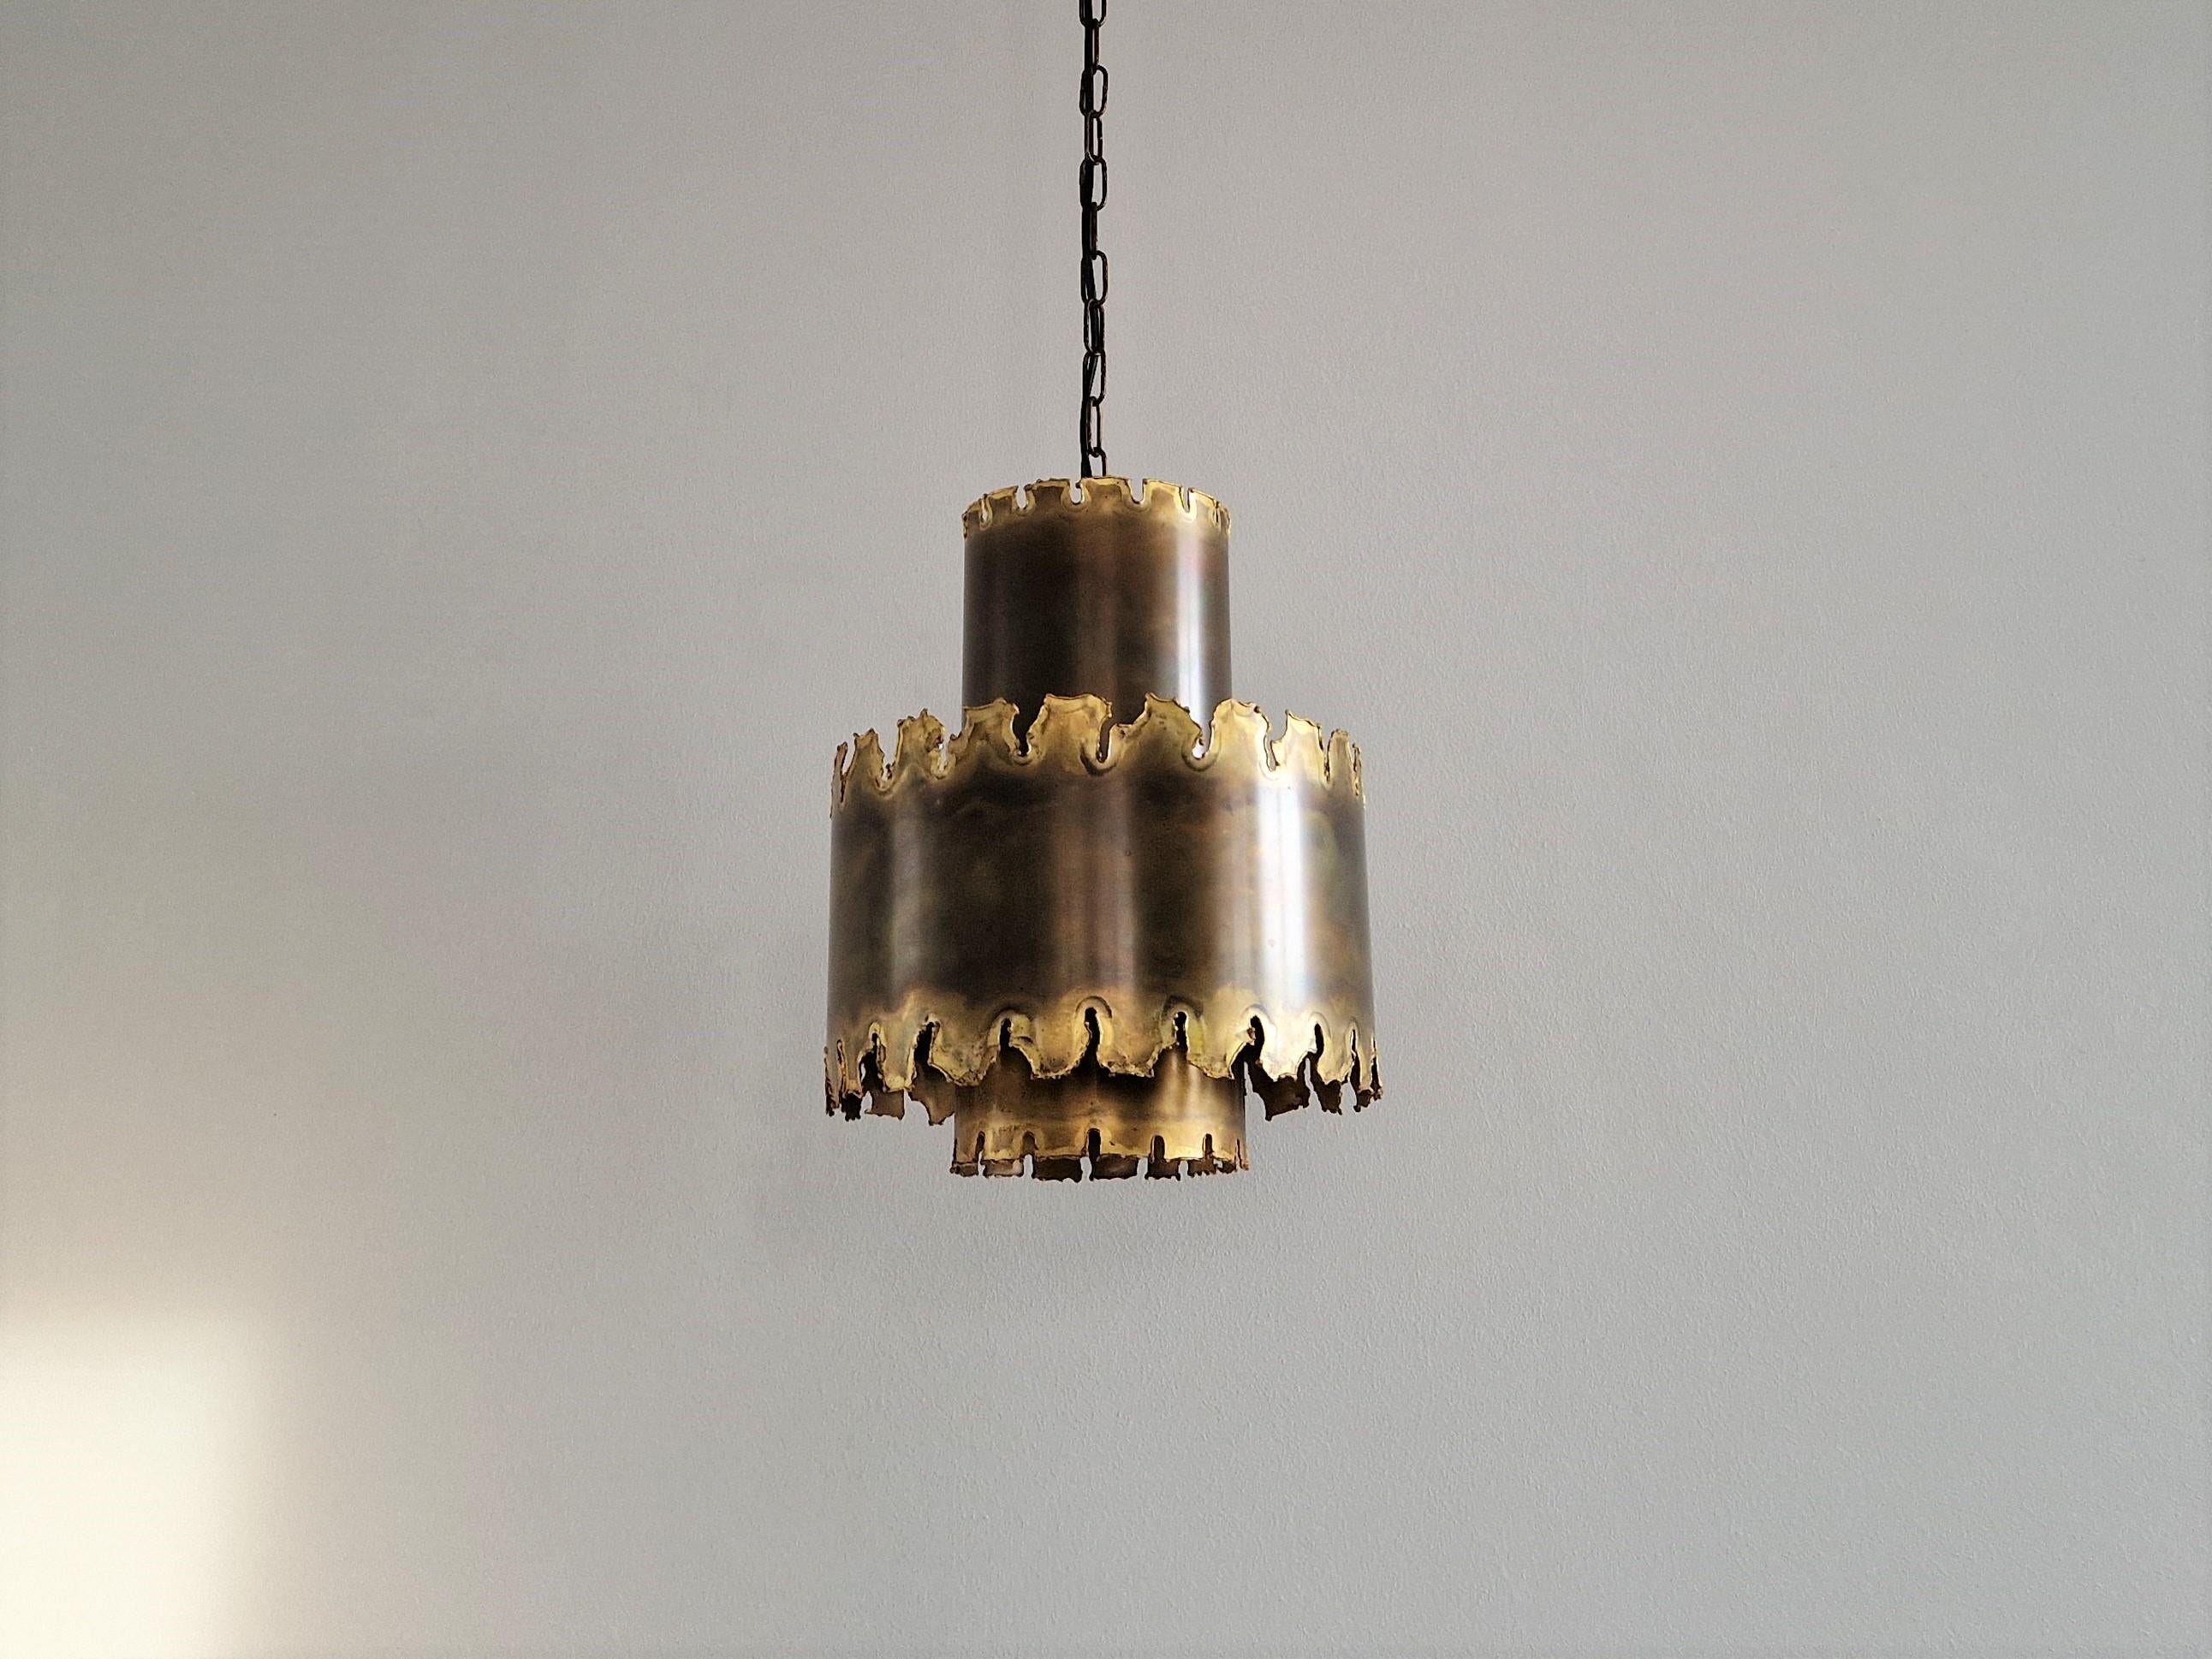 Cette superbe lampe suspendue brutaliste, modèle 6407, a été conçue par Svend Aage Holm Sørensen pour Sørensen & Co au Danemark dans les années 1960. L'utilisation et le travail du laiton oxydé font de ce luminaire un objet impressionnant. La lampe